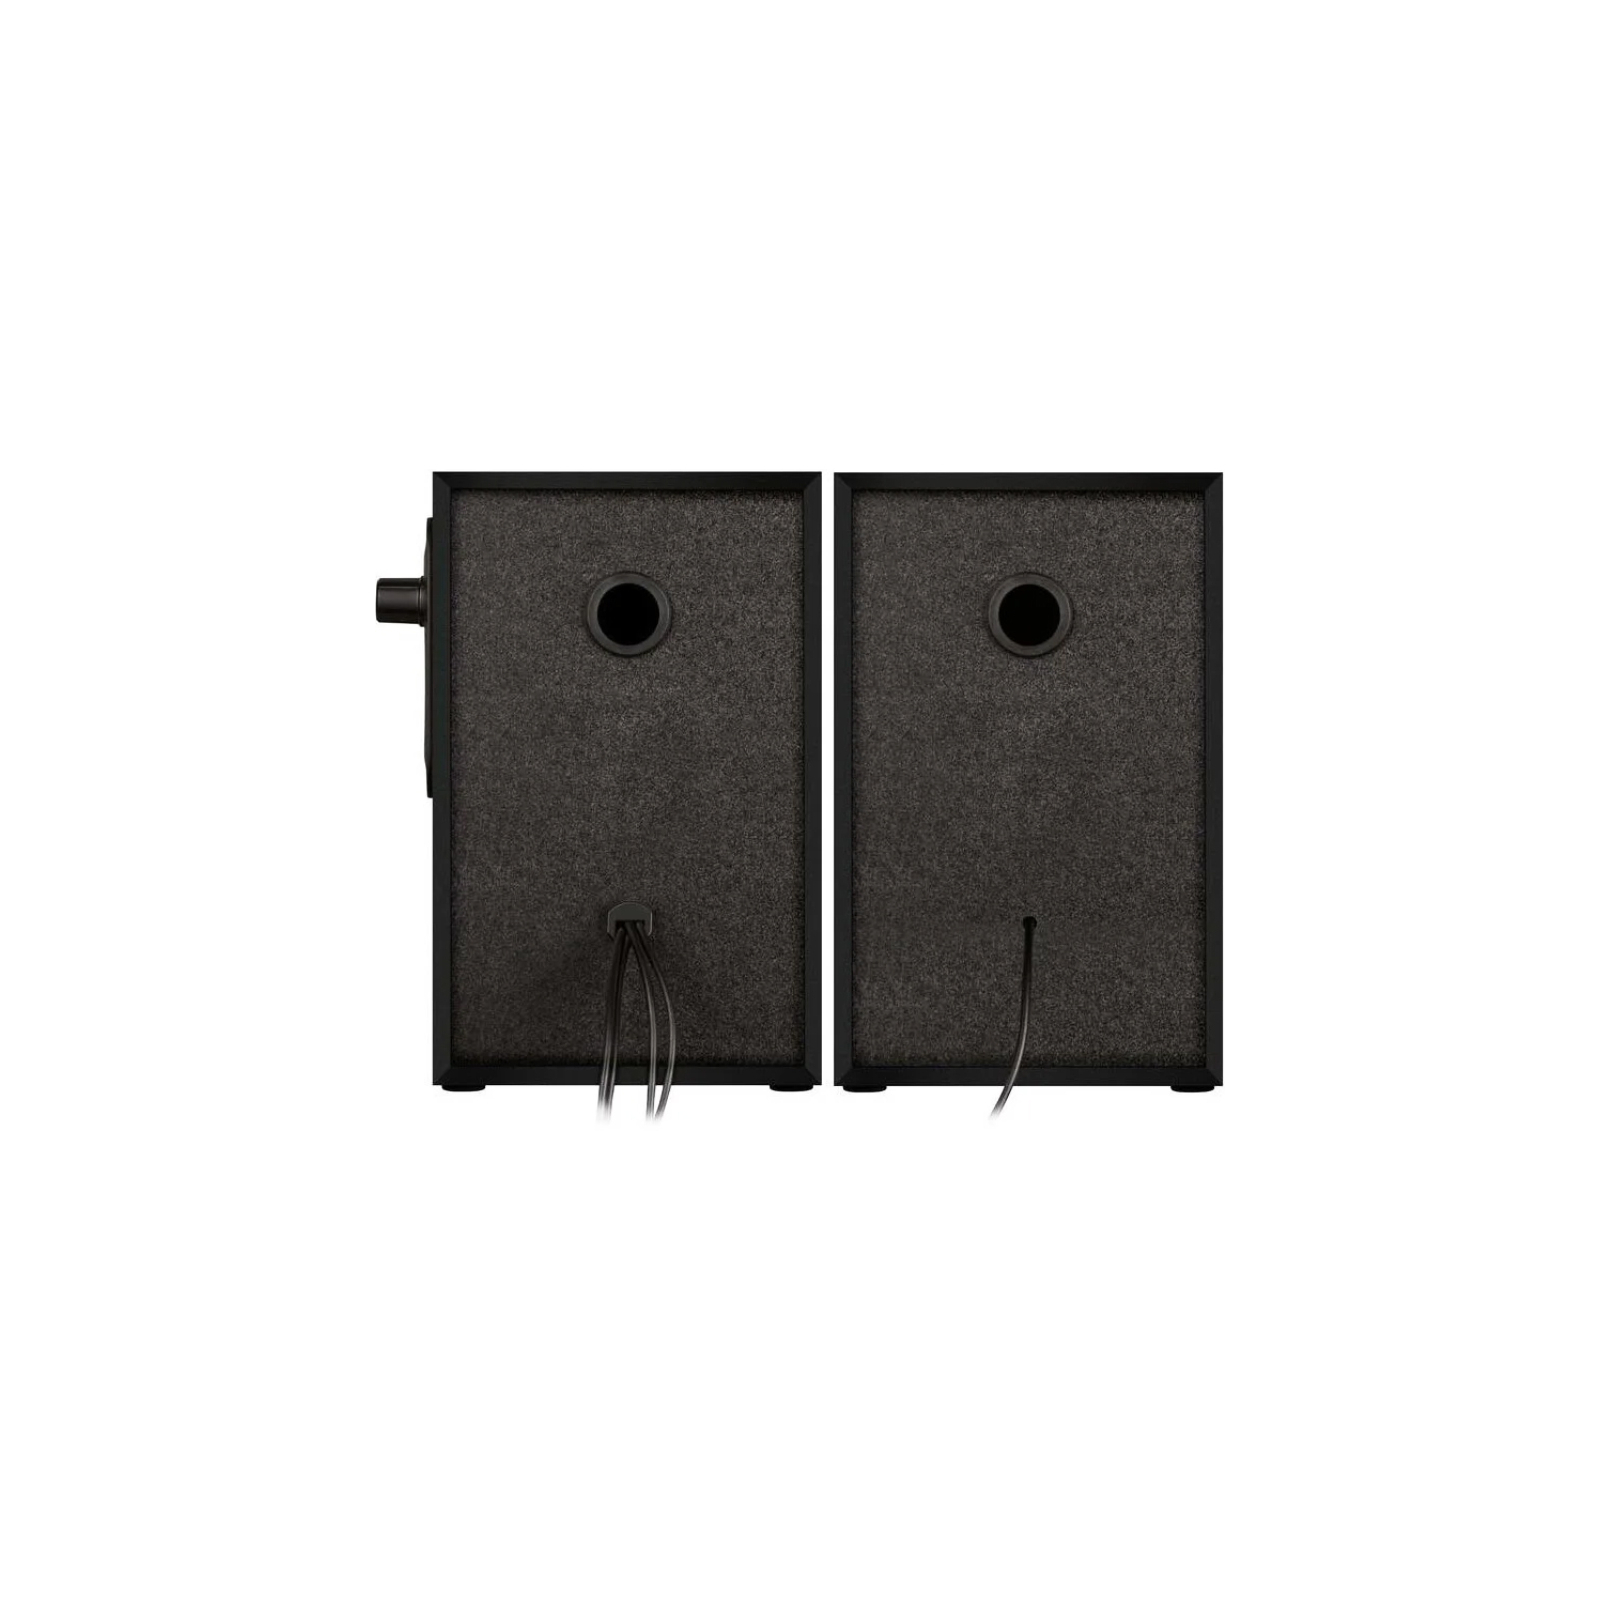 Акустическая система Defender SPK 270 USB Black (65270) изображение 5